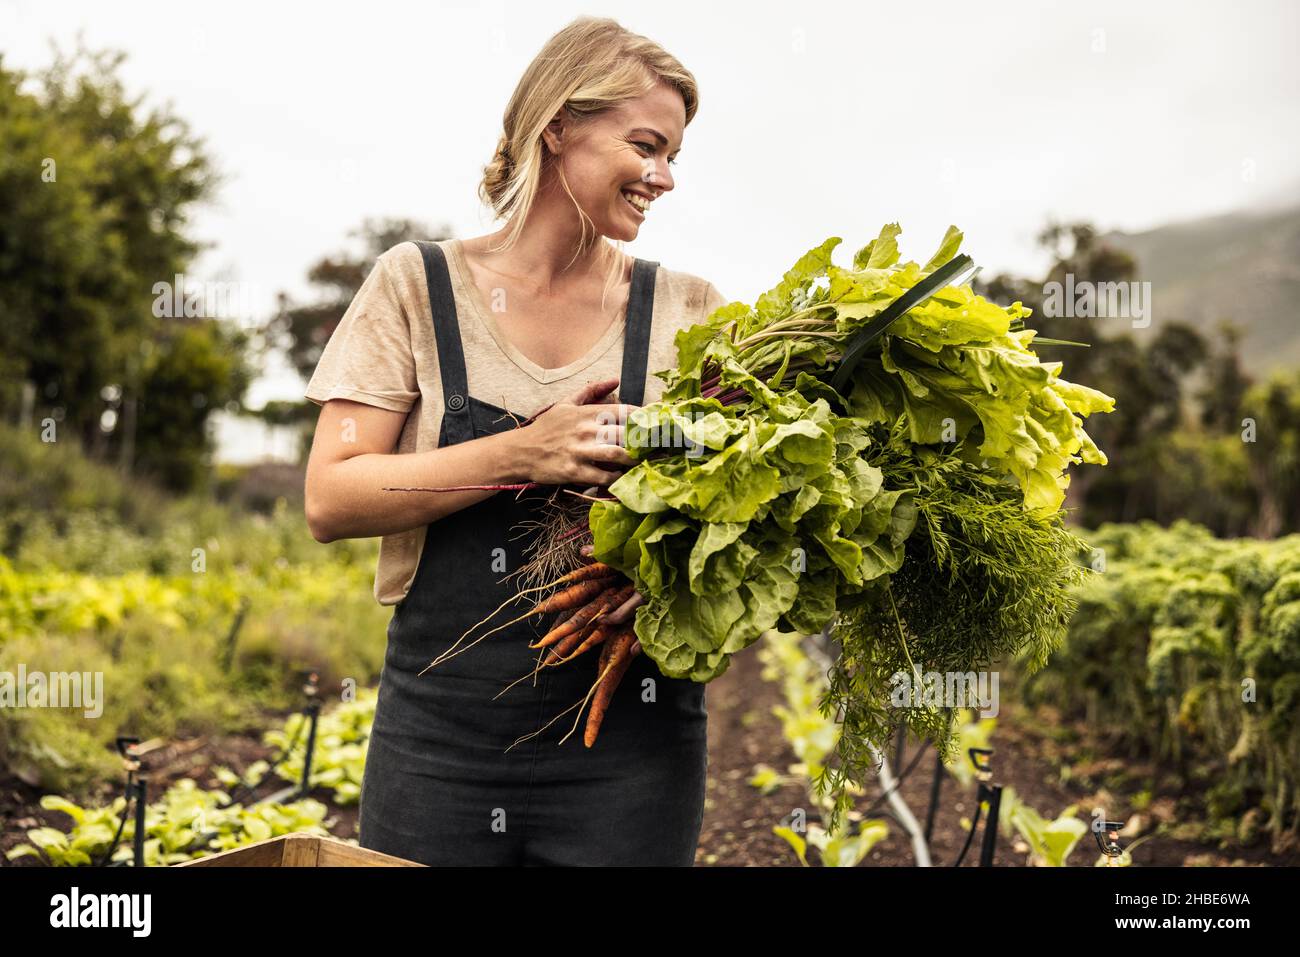 Fröhlicher Bio-Bauer, der frisch gepflücktes Gemüse auf einem landwirtschaftlichen Feld hält. Selbstnachhaltige junge Frau, die frische grüne Produkte in sich sammelt Stockfoto